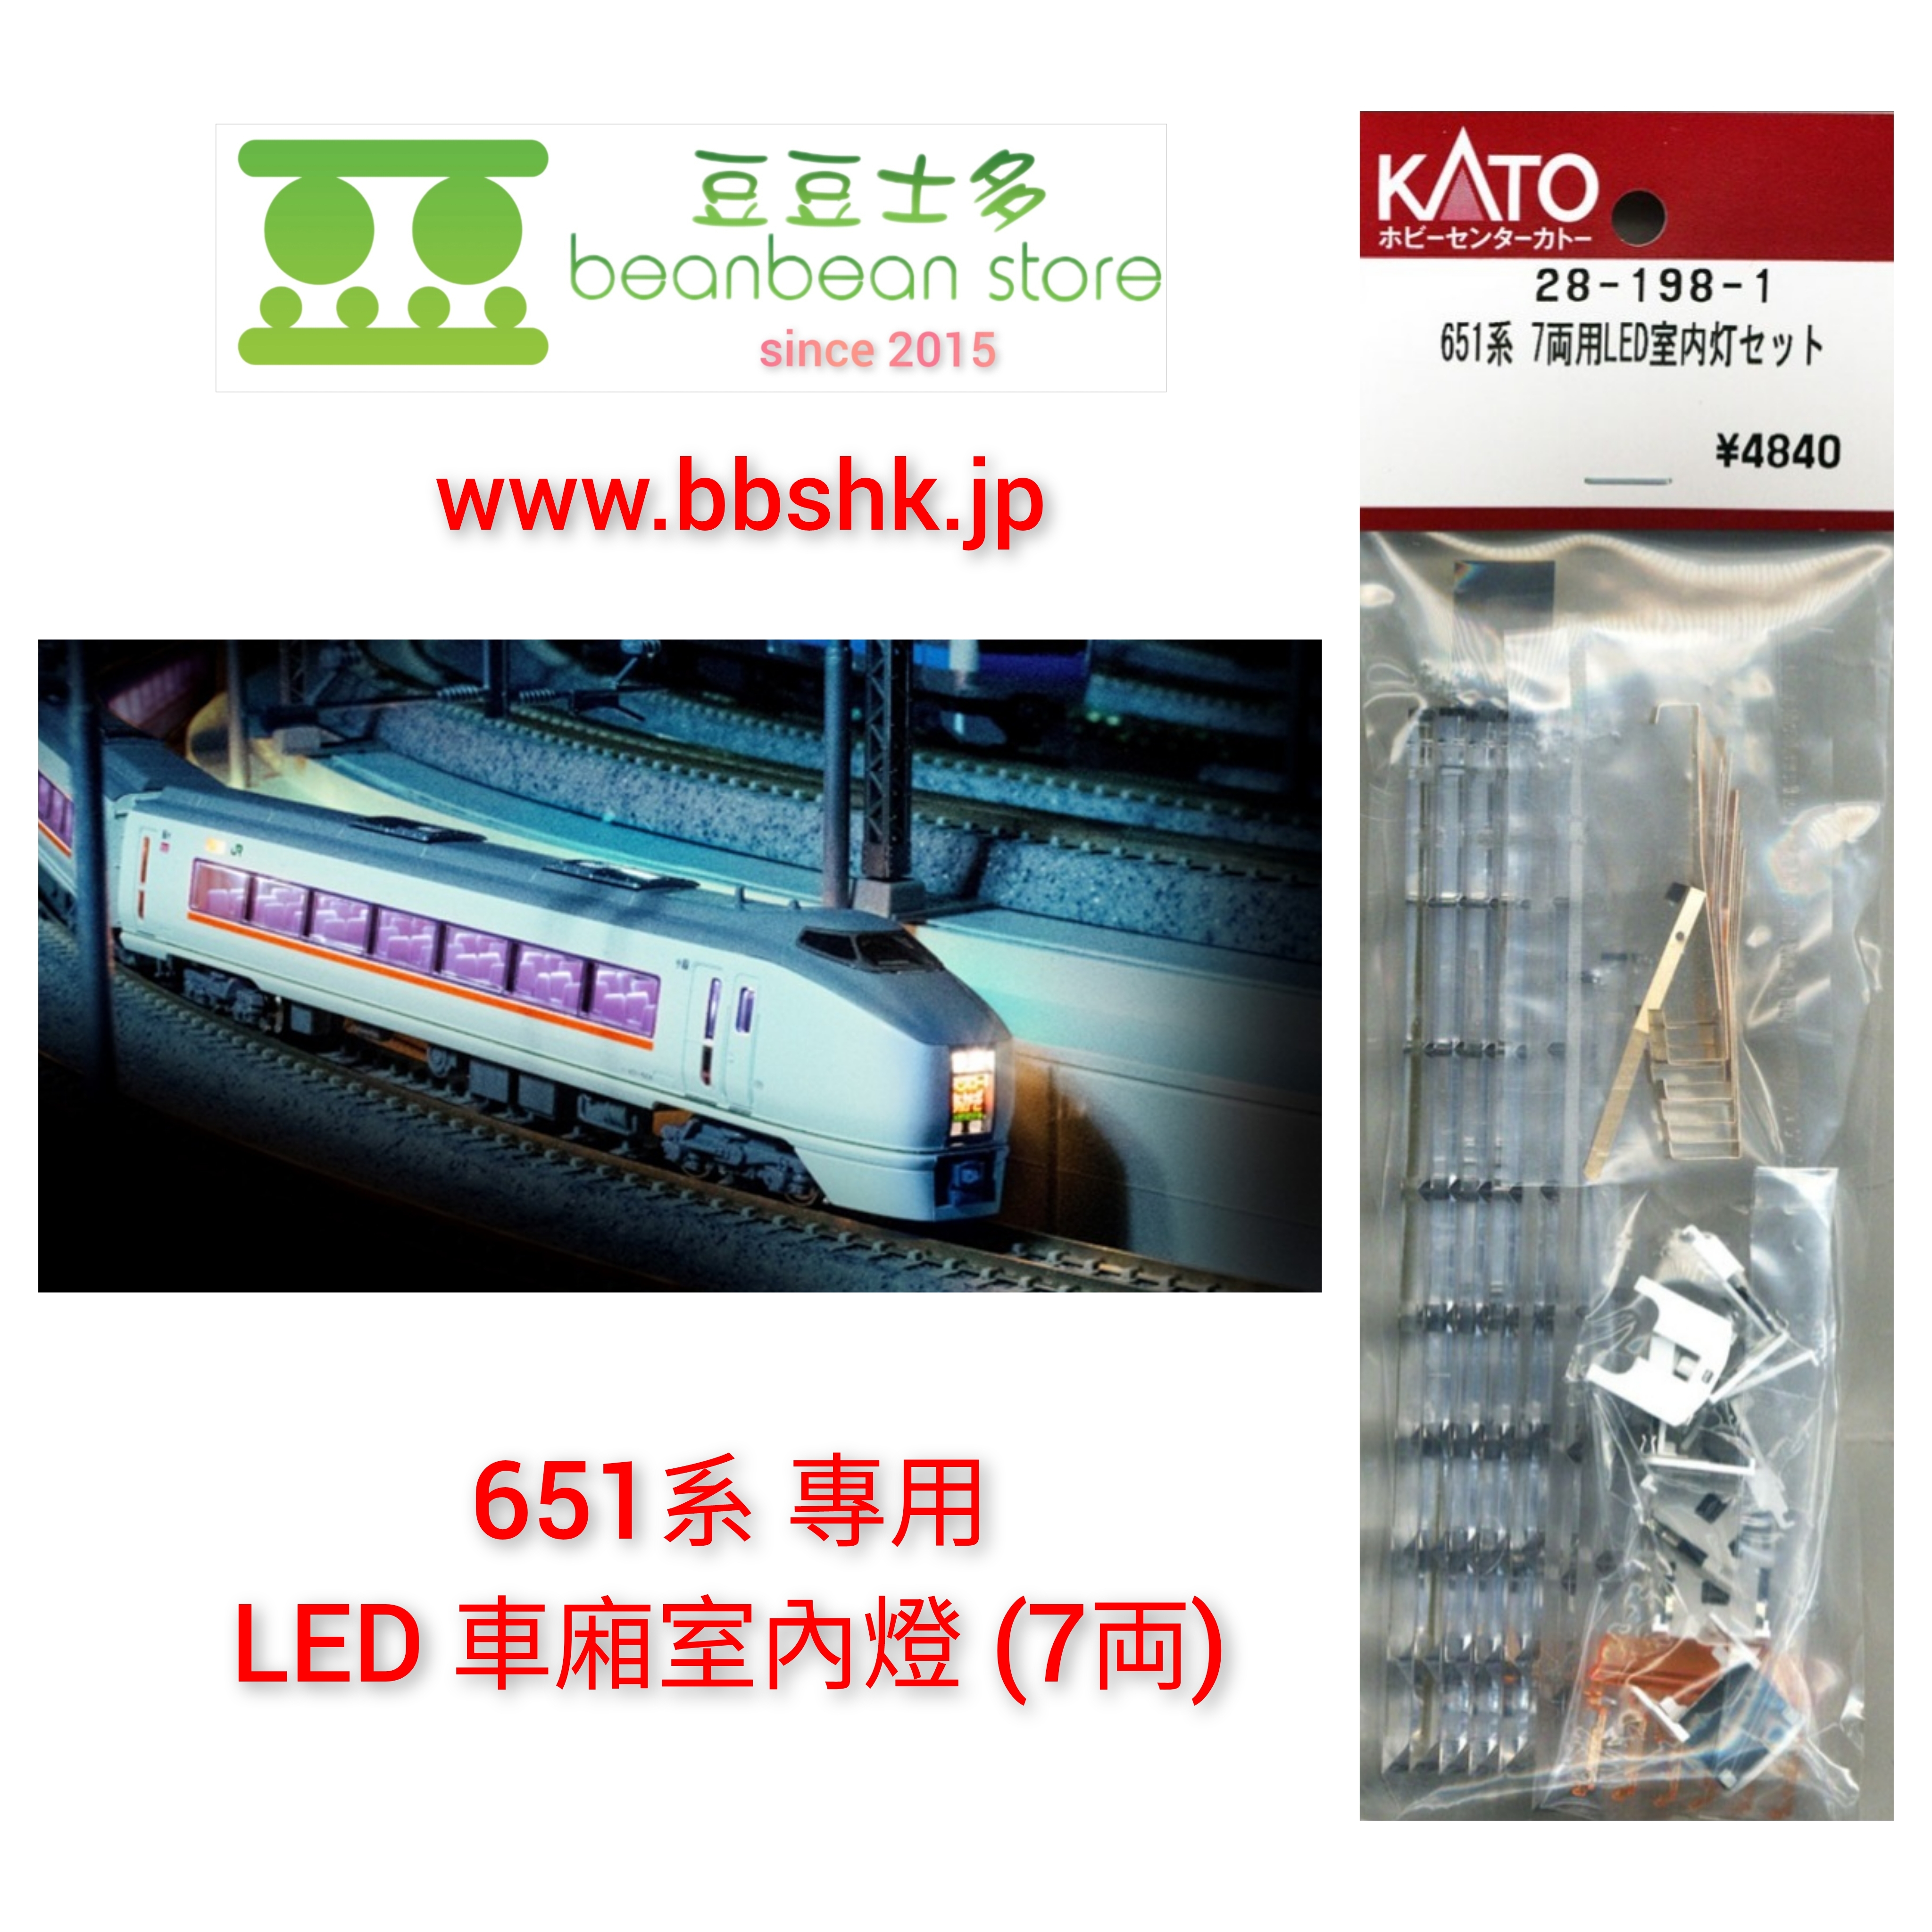 KATO 28-198-1 651系專用LED 車廂室内燈(7両)